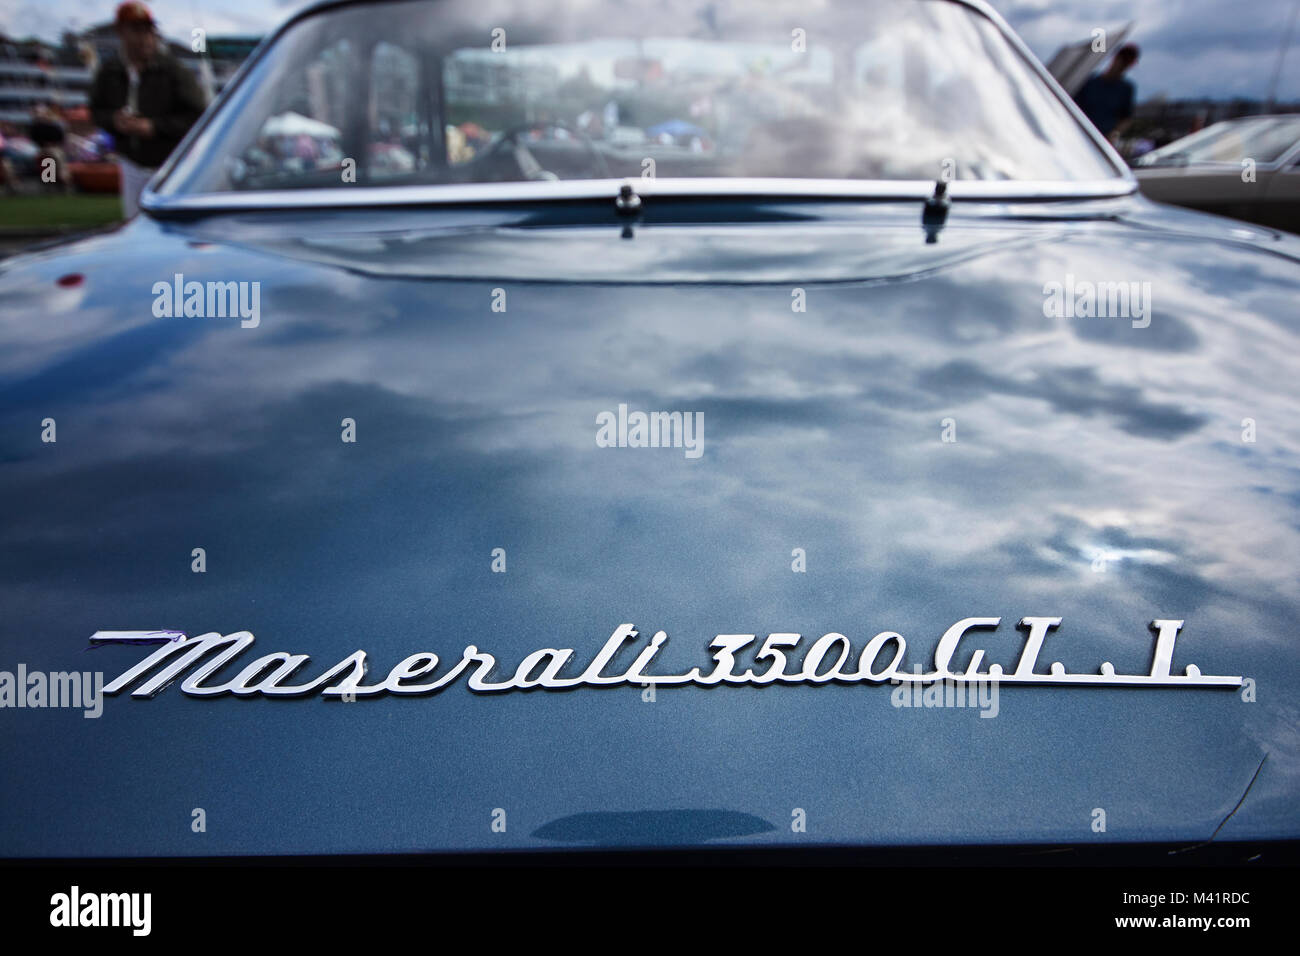 details of a 1961 Maserati 3500 GTi gran turismo Stock Photo